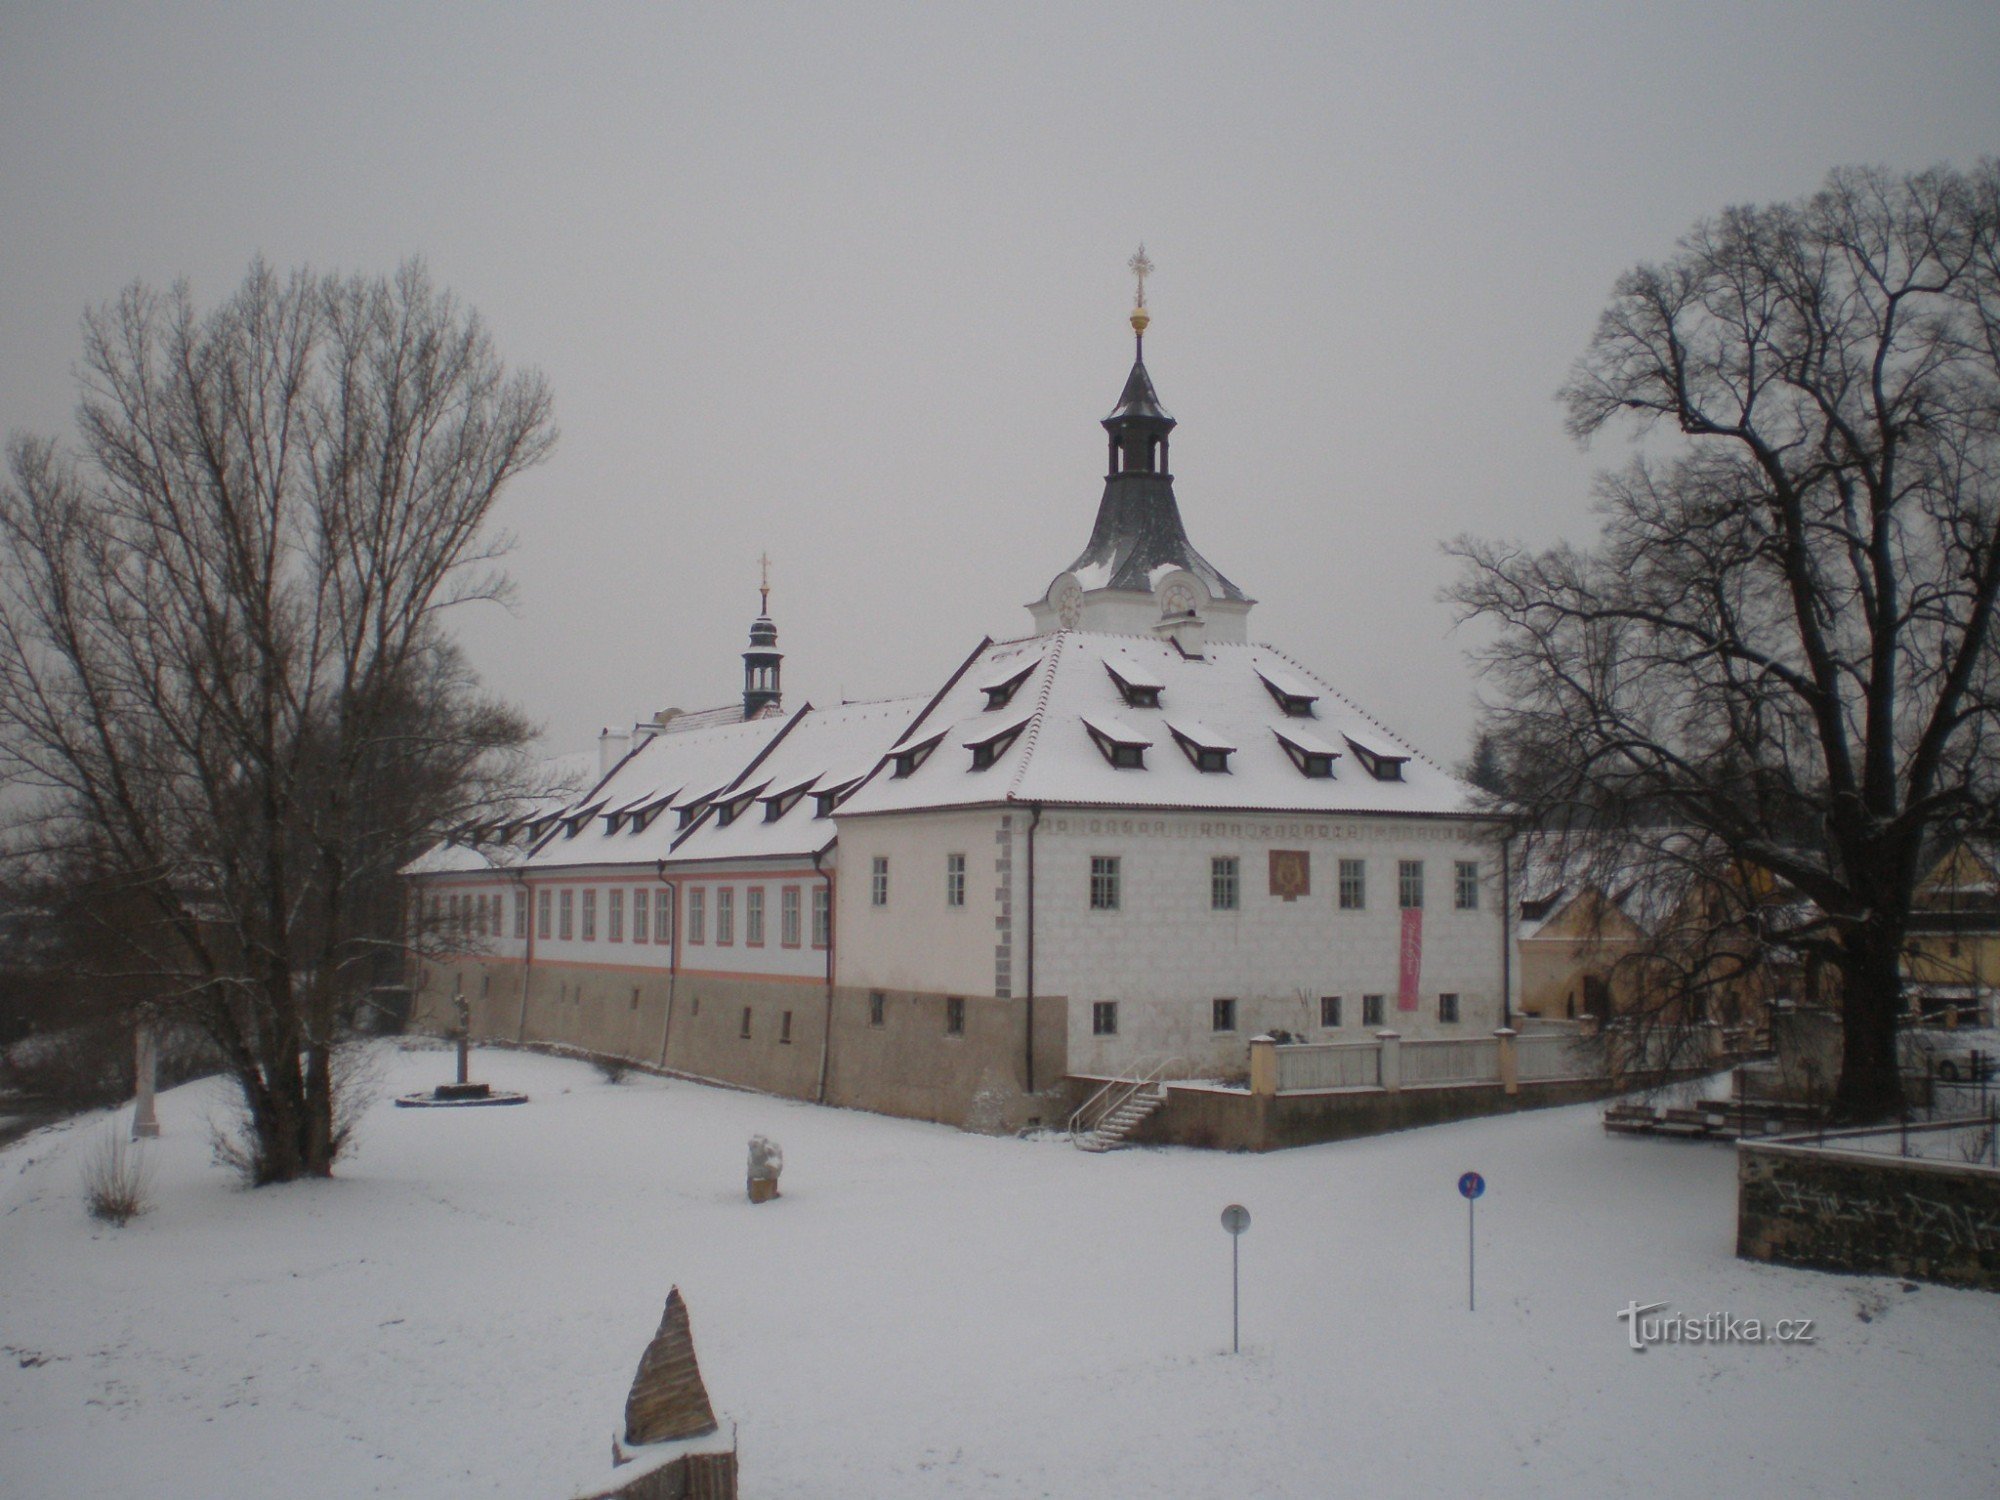 Dobřichovice - castle